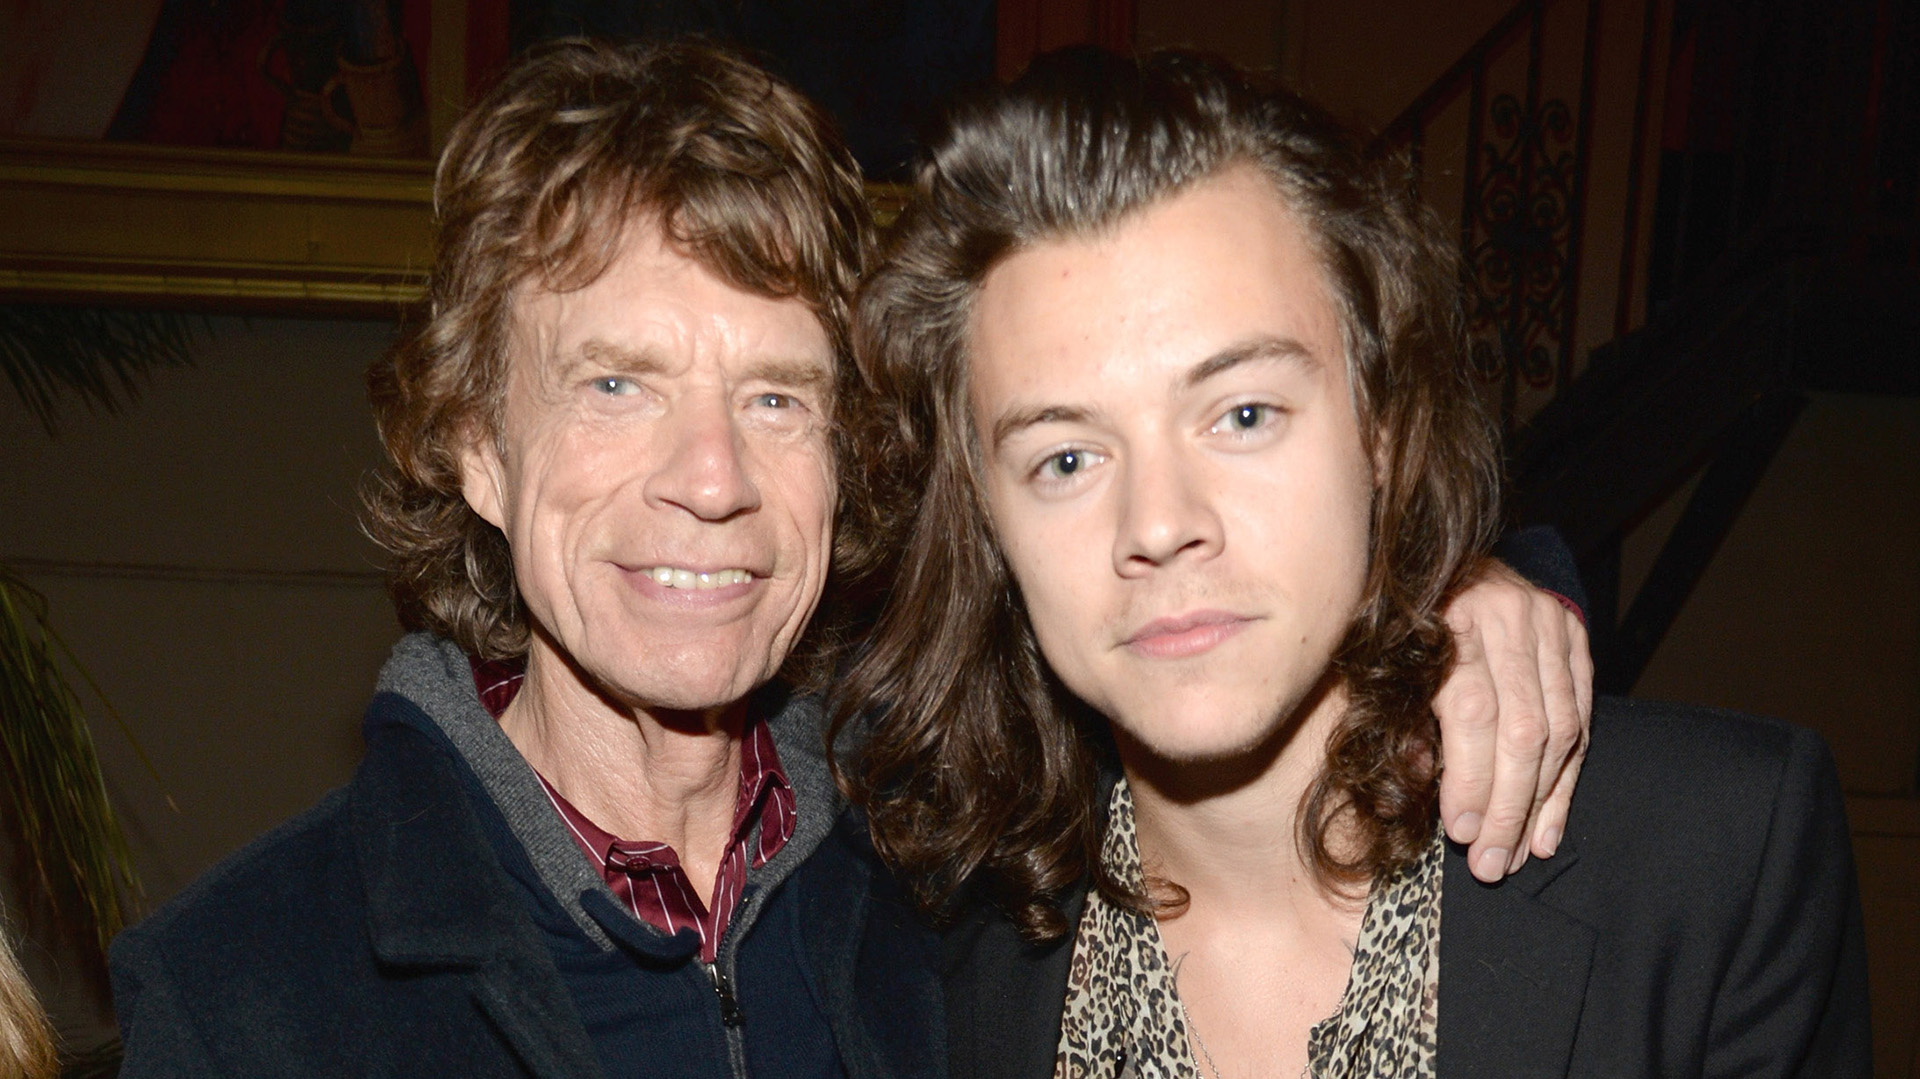 Mick Jagger, sobre Harry Styles: “No tiene una voz como la mía ni se mueve en el escenario como yo” (Getty Images)